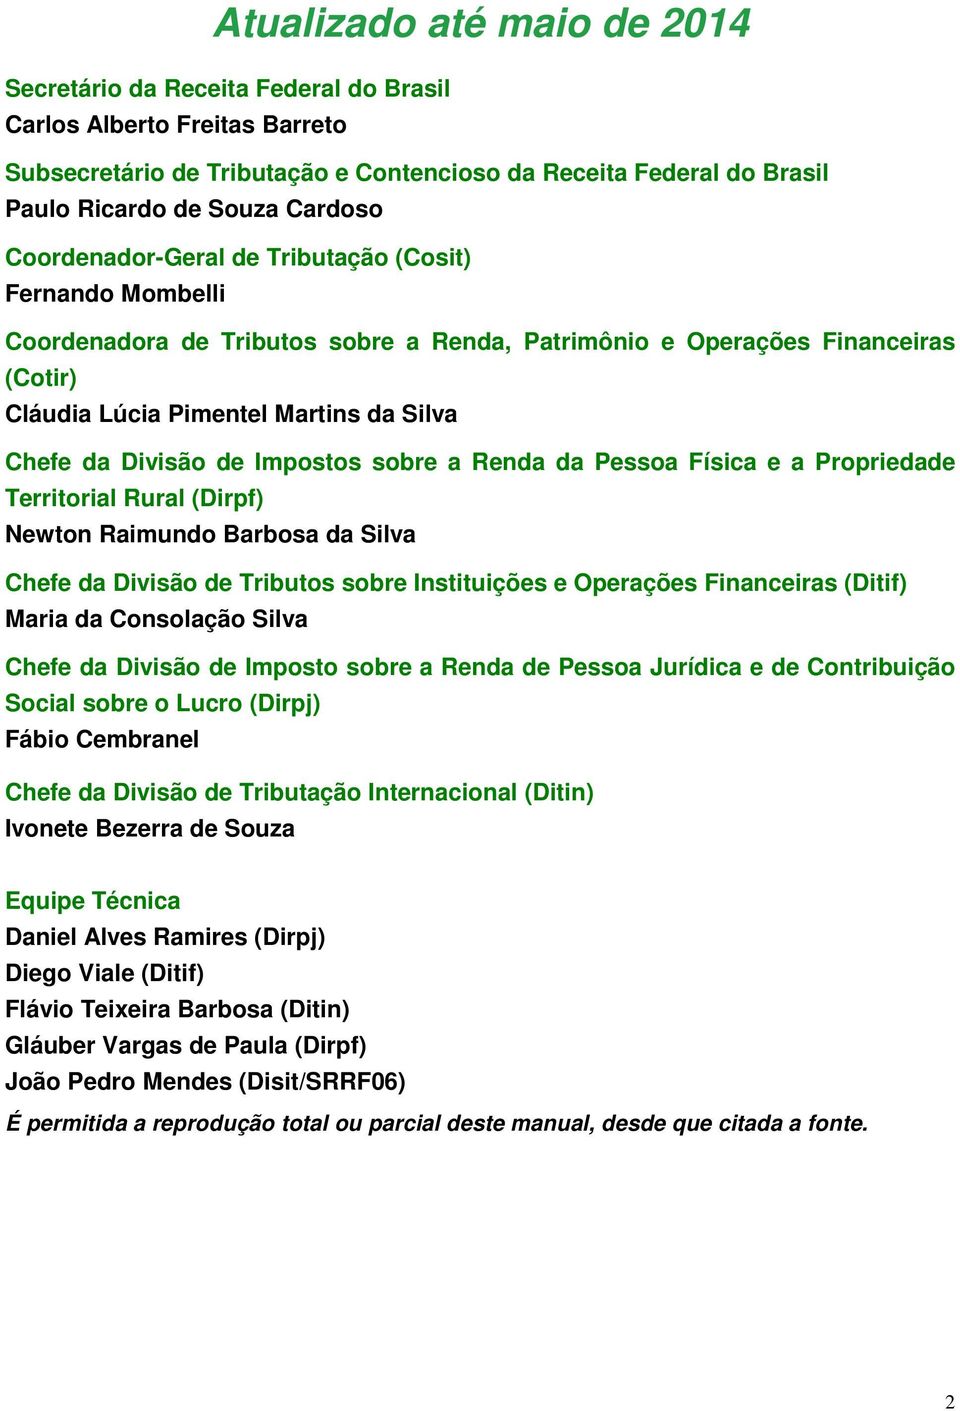 Divisão de Impostos sobre a Renda da Pessoa Física e a Propriedade Territorial Rural (Dirpf) Newton Raimundo Barbosa da Silva Chefe da Divisão de Tributos sobre Instituições e Operações Financeiras